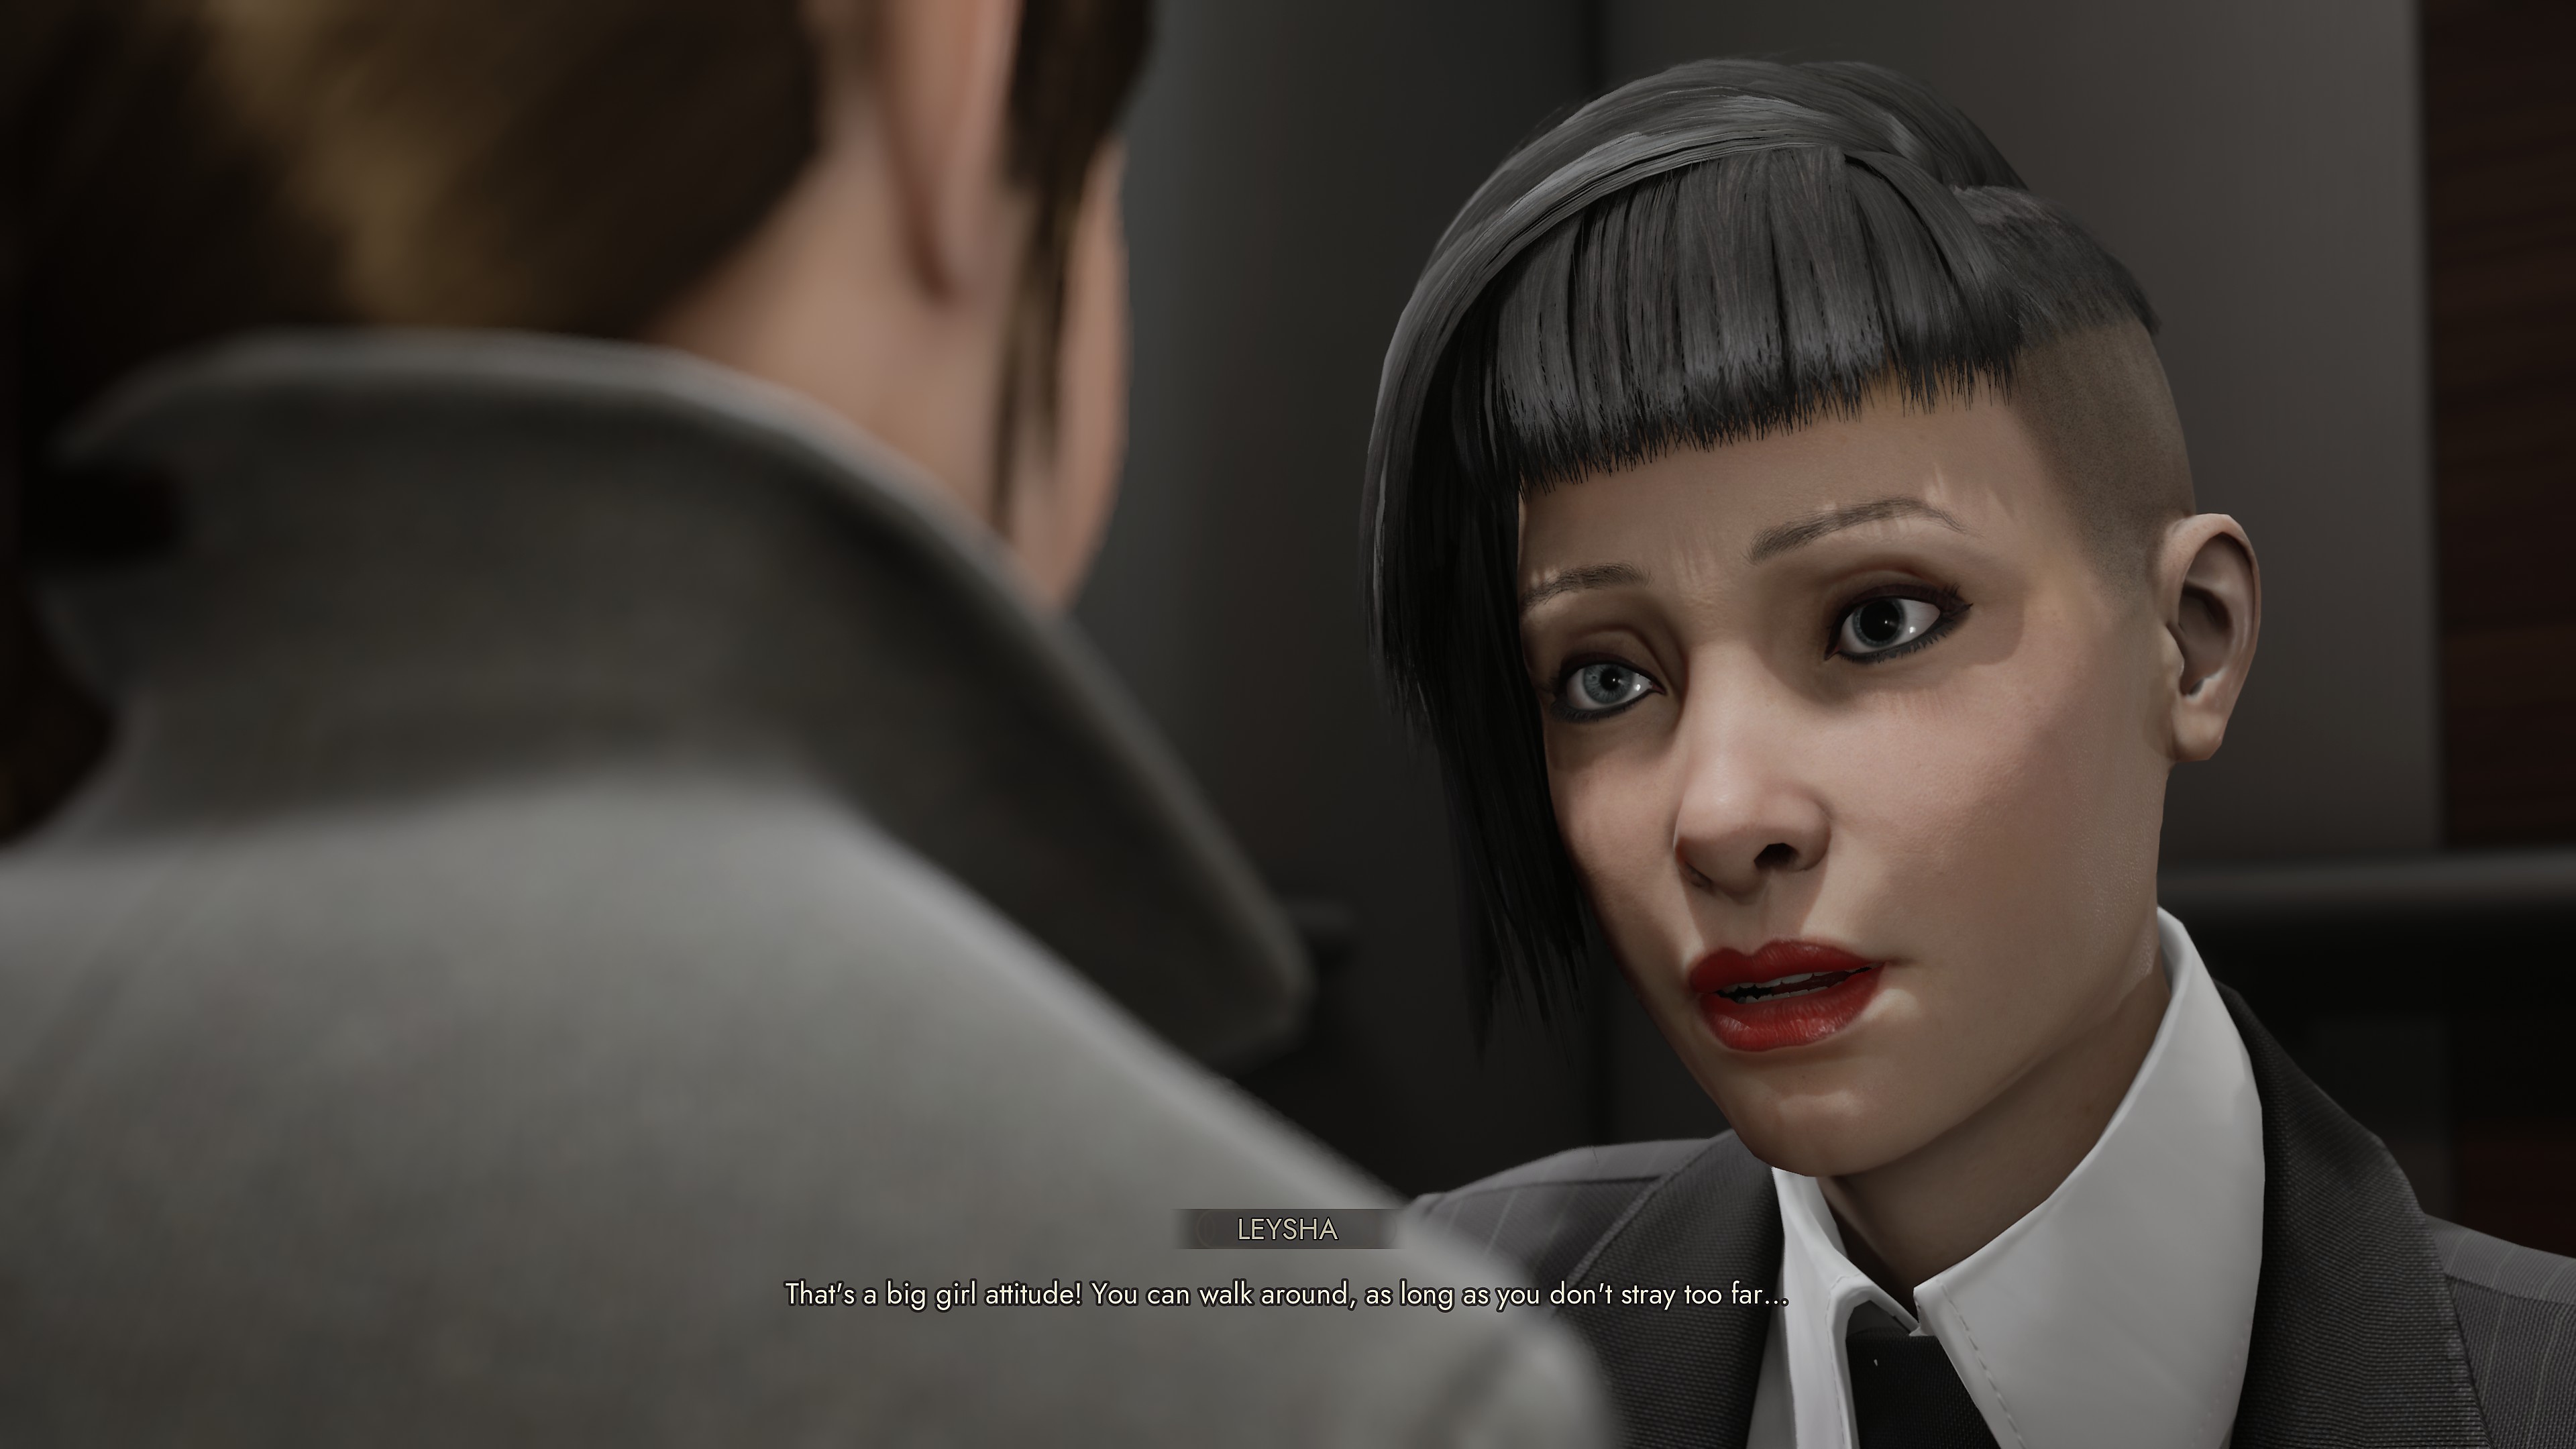 Vampire: The Masquerade - Swansong; captura de pantalla que muestra a dos personajes interactuando